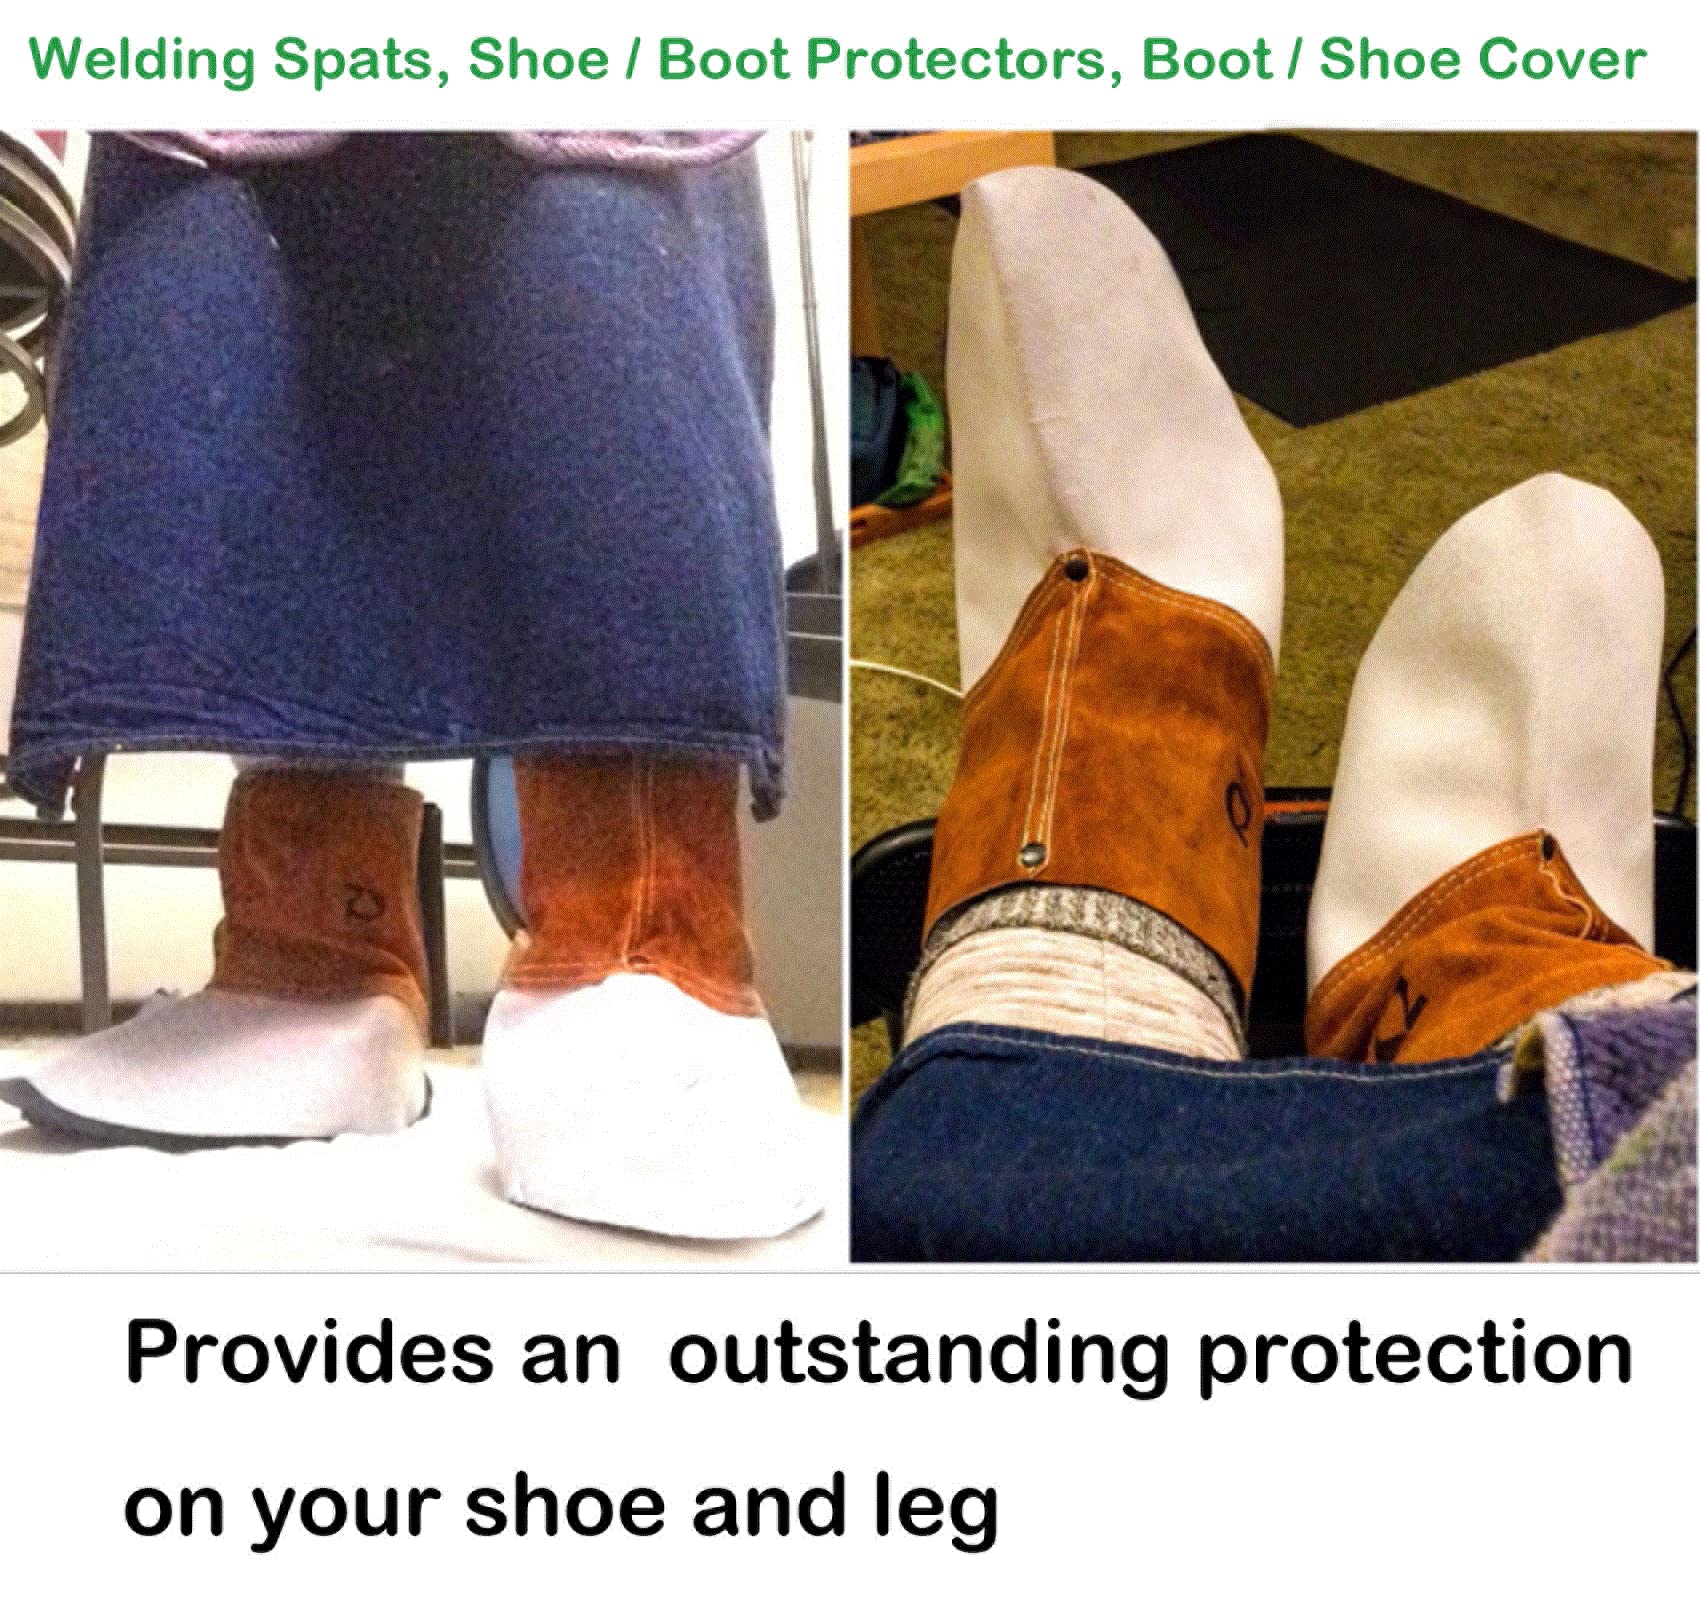 ZaoProteks ZP3003 Welding Spats, Welding Boot Protectors, Welding Shoe Cover, Welding Gaiters